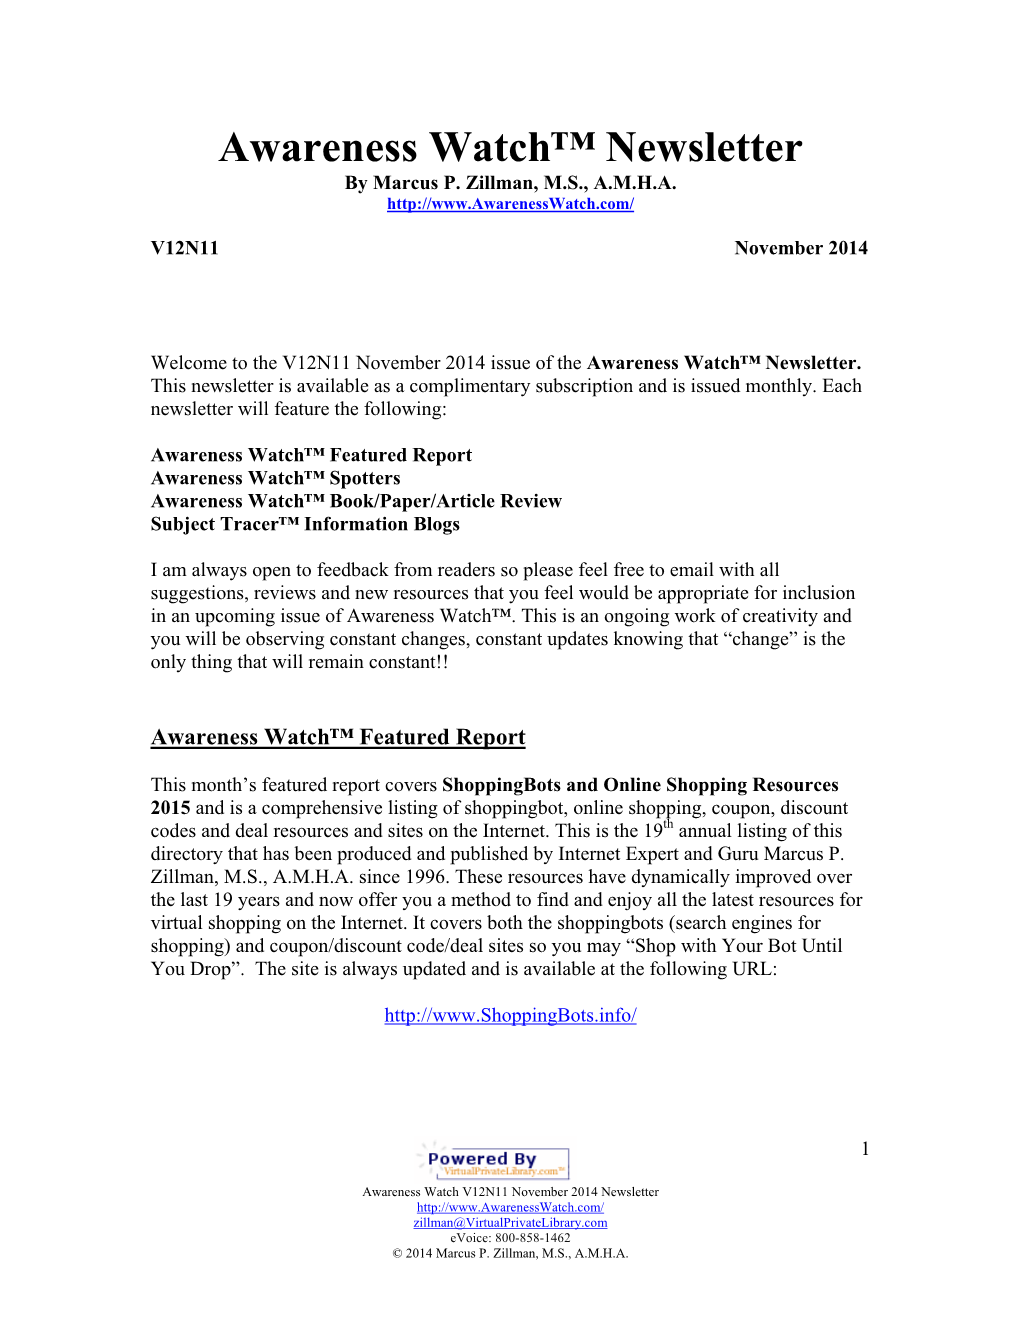 Awareness Watch™ Newsletter V12N11 November 2014